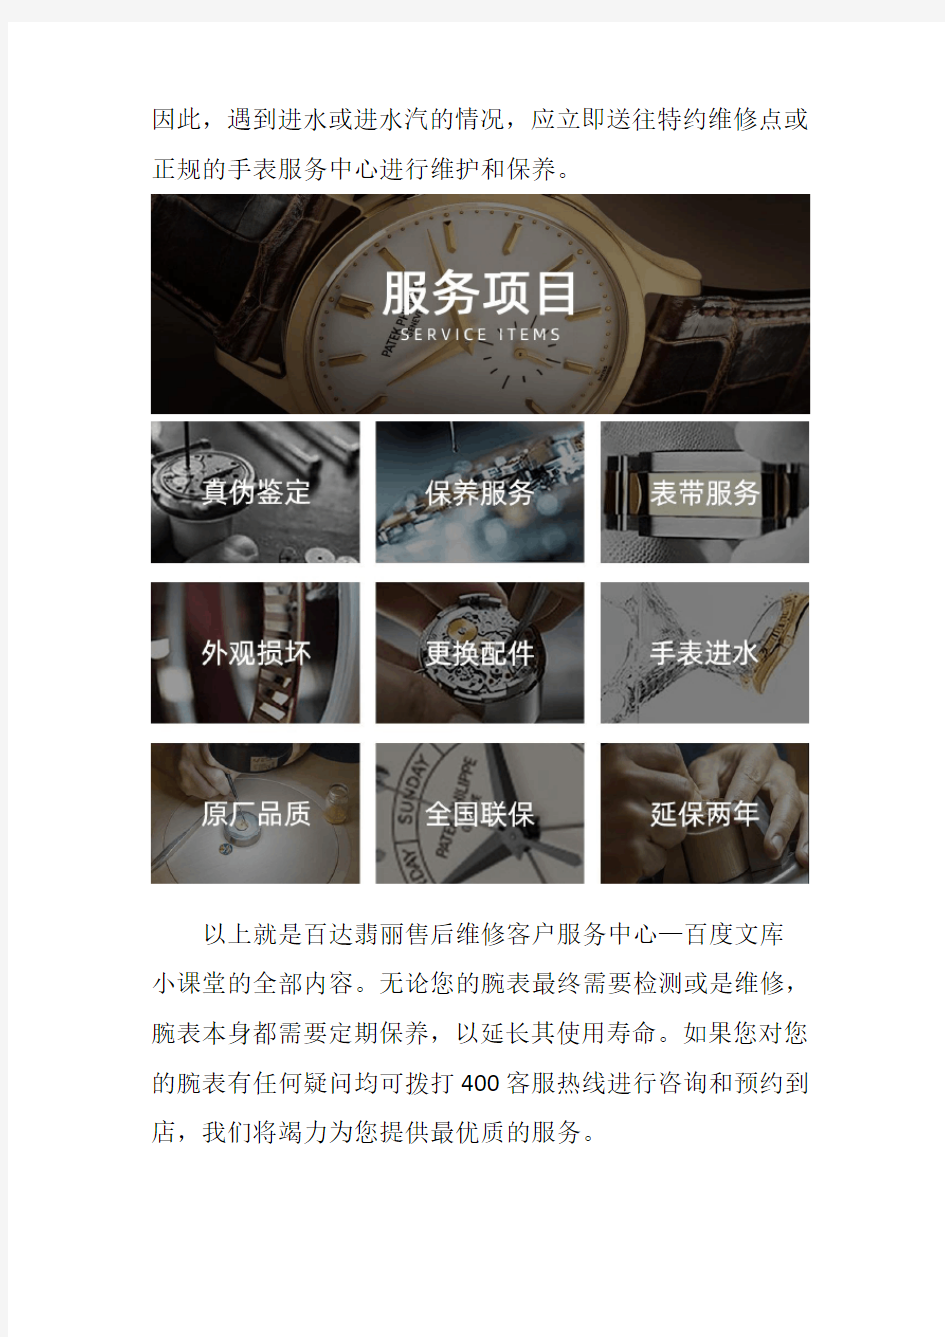 上海百达翡丽表售后服务中心--手表防水保养知识